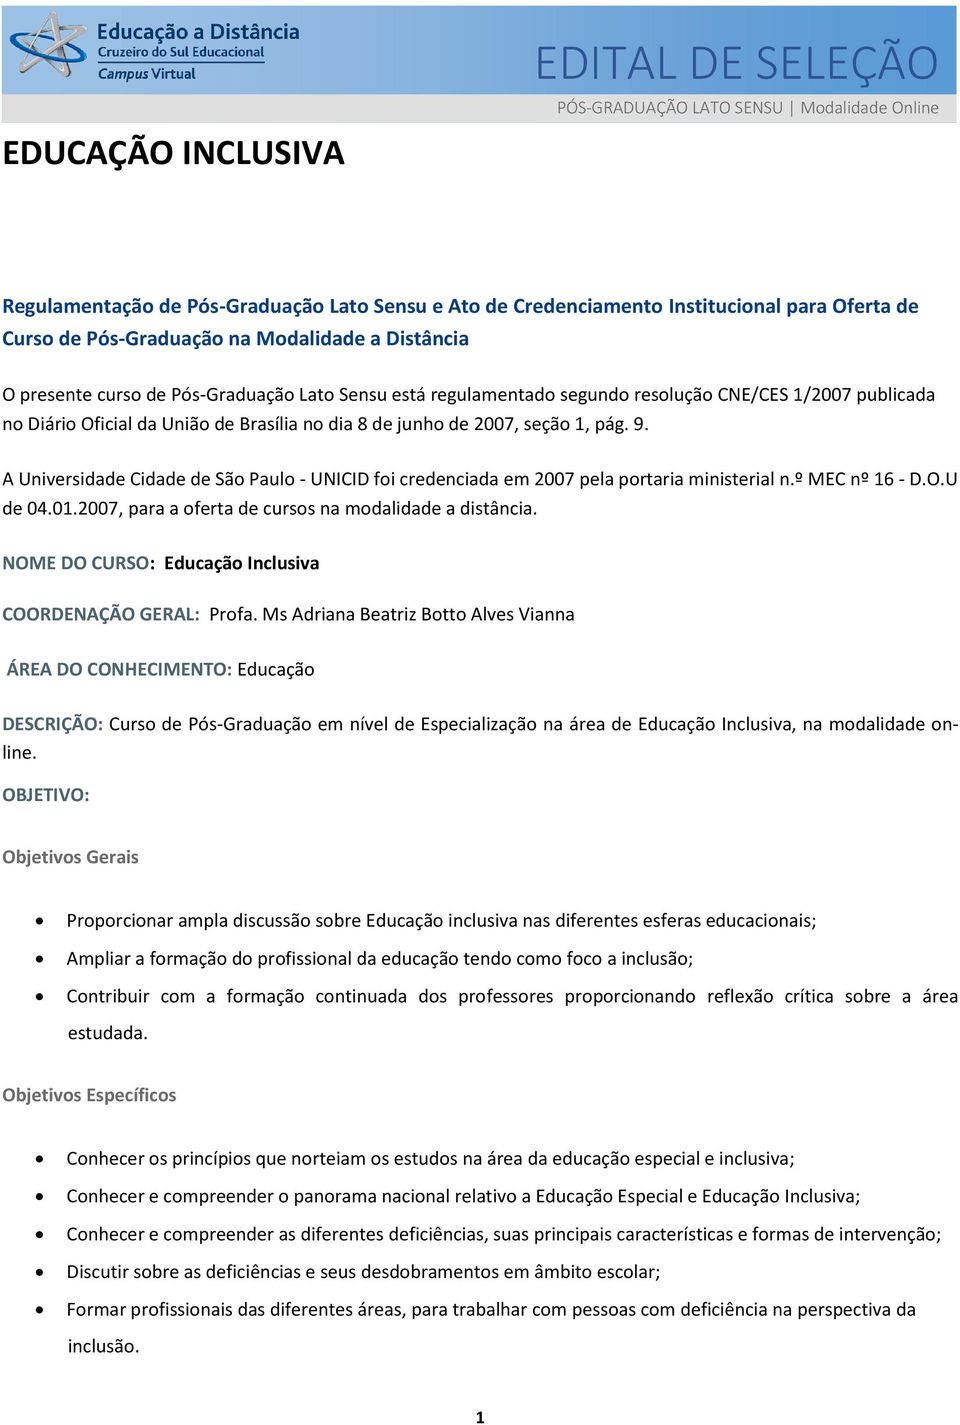 seção 1, pág. 9. A Universidade Cidade de São Paulo - UNICID foi credenciada em 2007 pela portaria ministerial n.º MEC nº 16 - D.O.U de 04.01.2007, para a oferta de cursos na modalidade a distância.